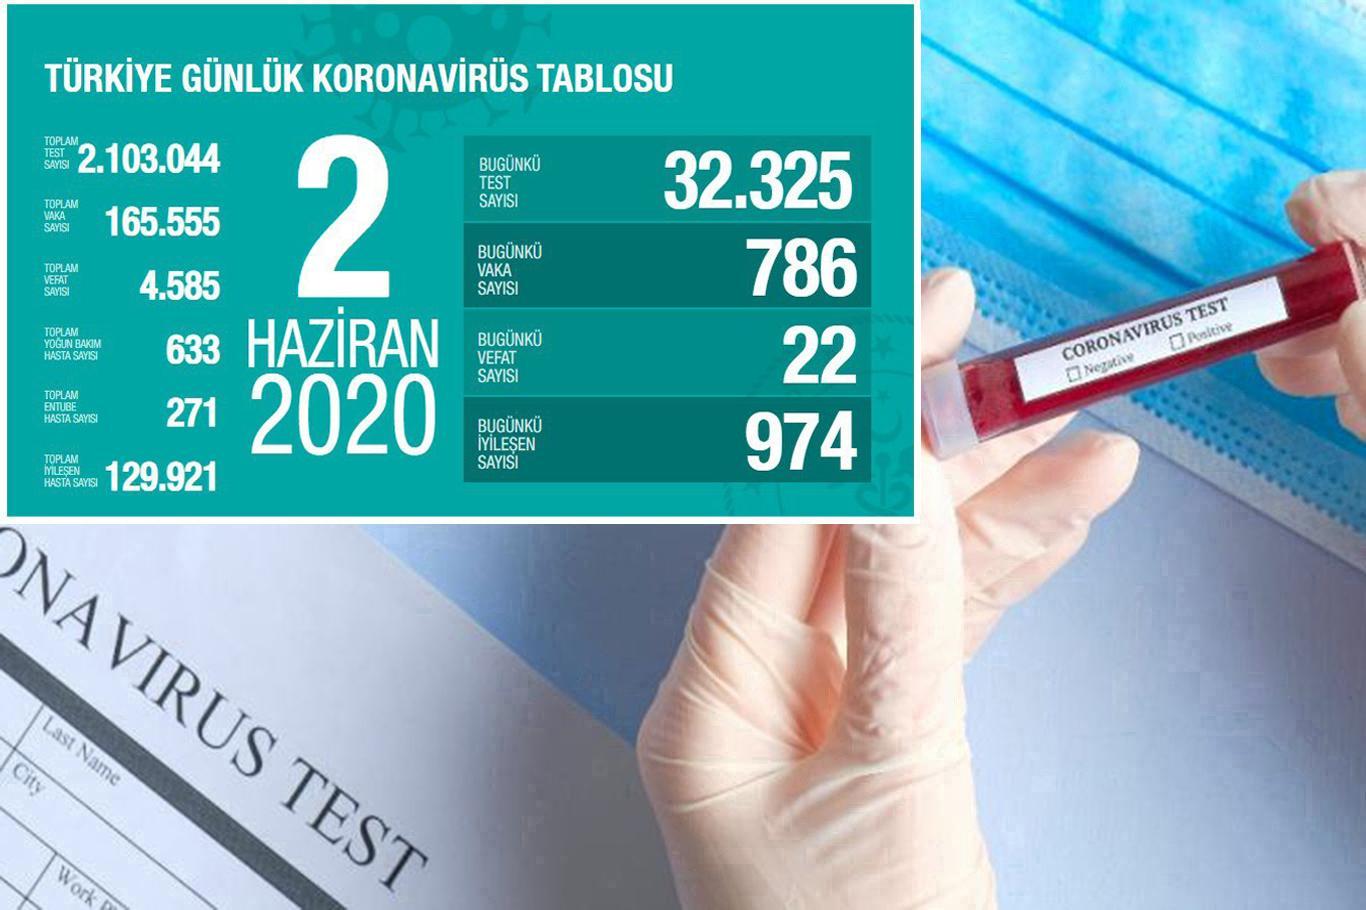 Turkey’s death toll from coronavirus rises to 4,585